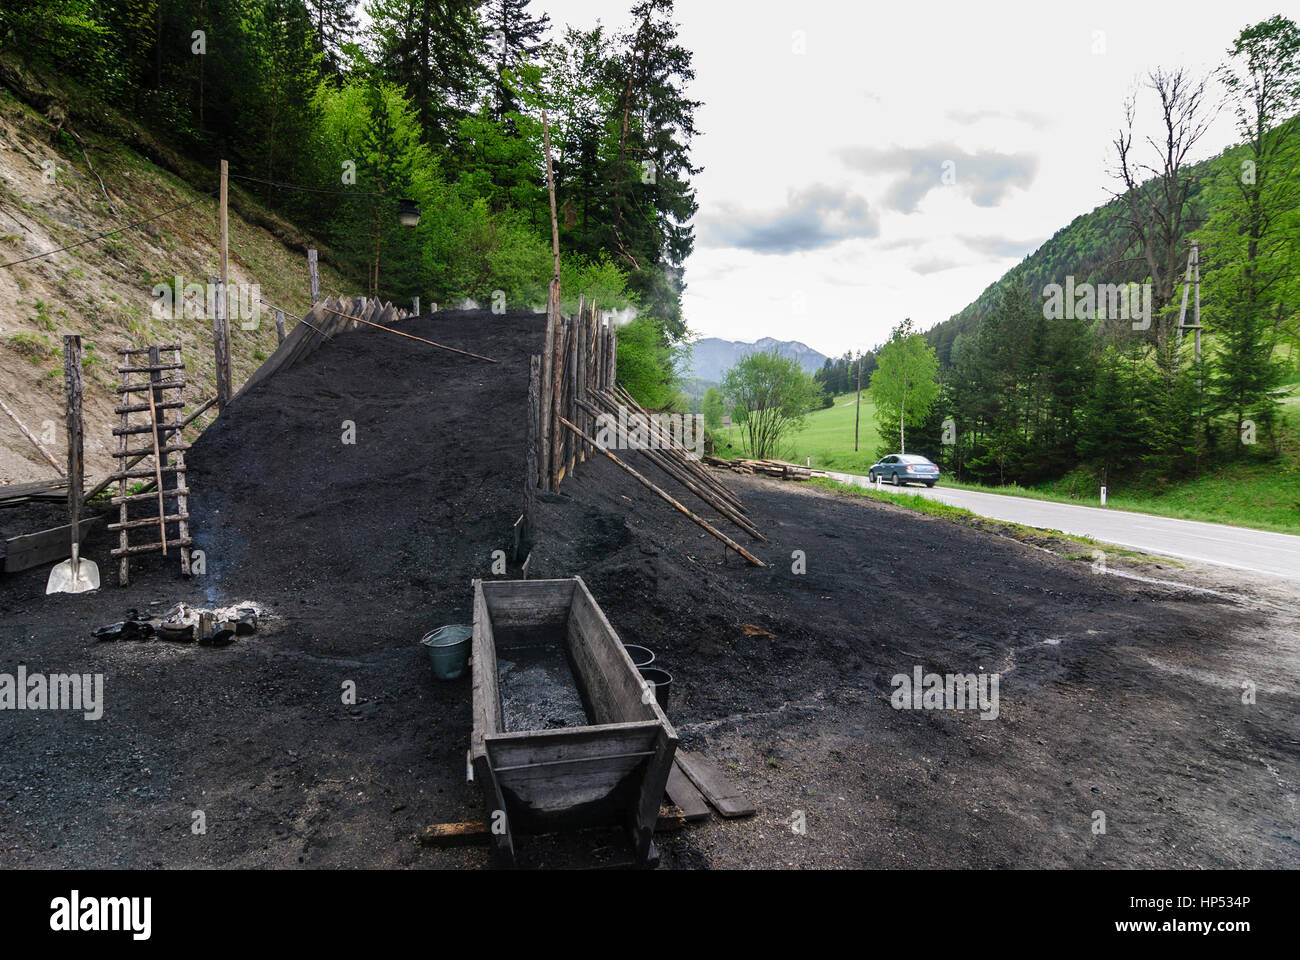 Rohr im Gebirge, In service coal charcoal maker, Wienerwald, Vienna Woods, Niederösterreich, Lower Austria, Austria Stock Photo